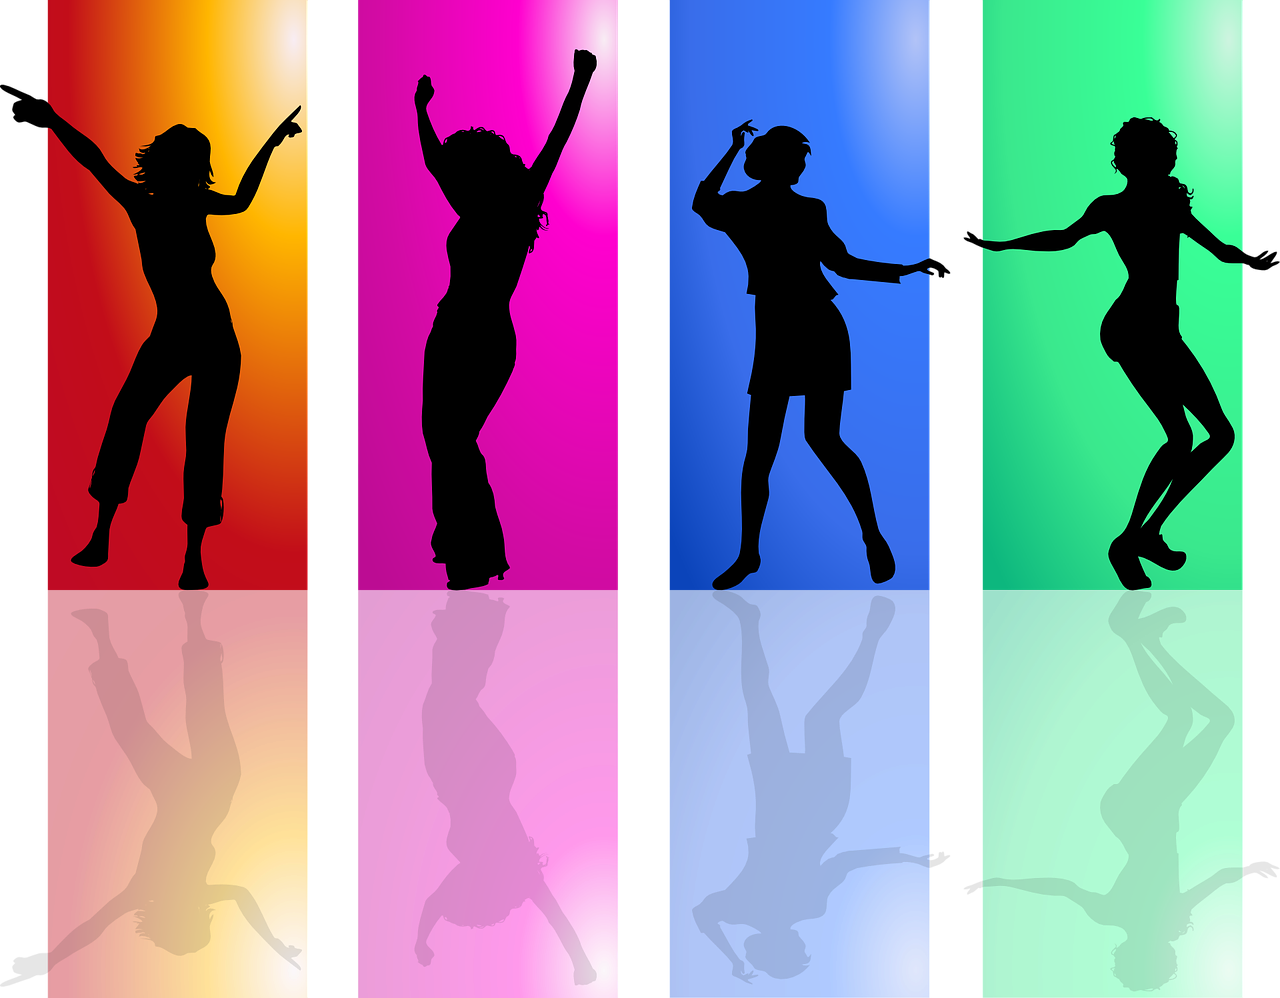 Σιλουέτες γυναικών που χορεύουν για να τονίσουν μία από τις ευχάριστες δραστηριότητες που μπορούν να εντάξουν στη ζωή τους αν καταφέρουν να βρουν ελεύθερο χρόνο.